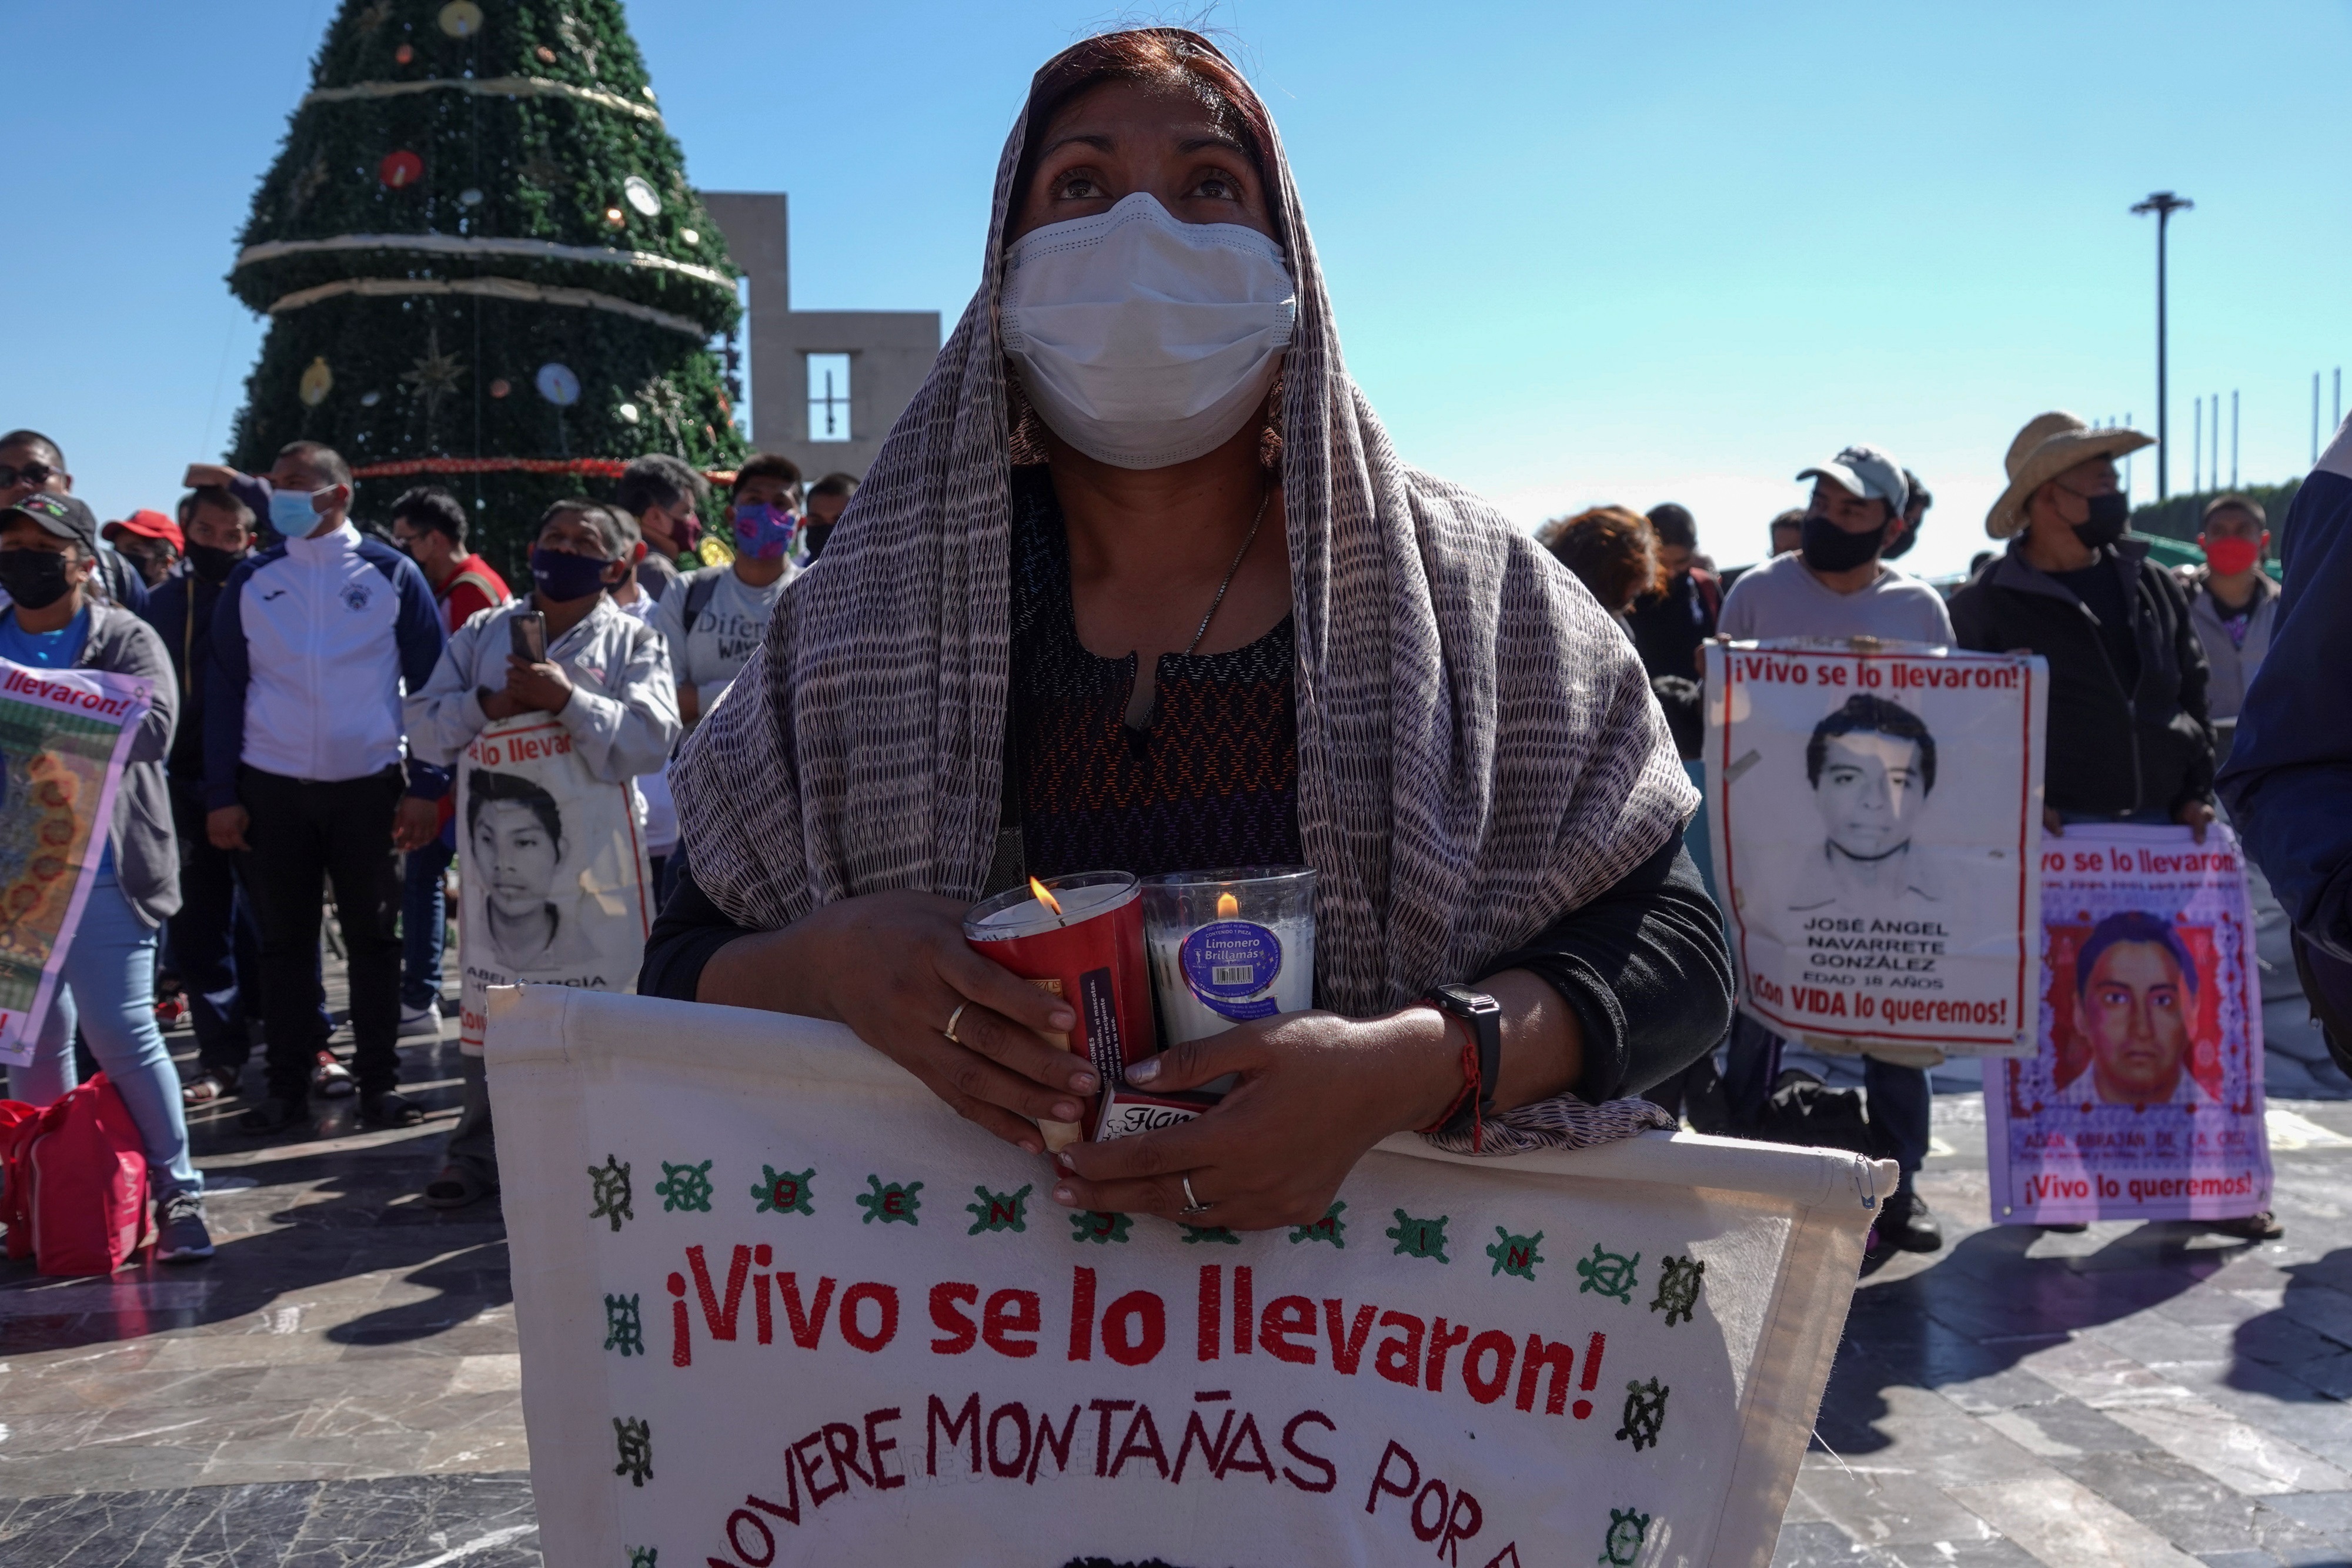 Rosario Piedra aseguró que colaboraron ampliamente durante 2021 con padres y familiares de los normalistas desaparecidos en Ayotzinapa

Foto: EFE/Madla Hartz
